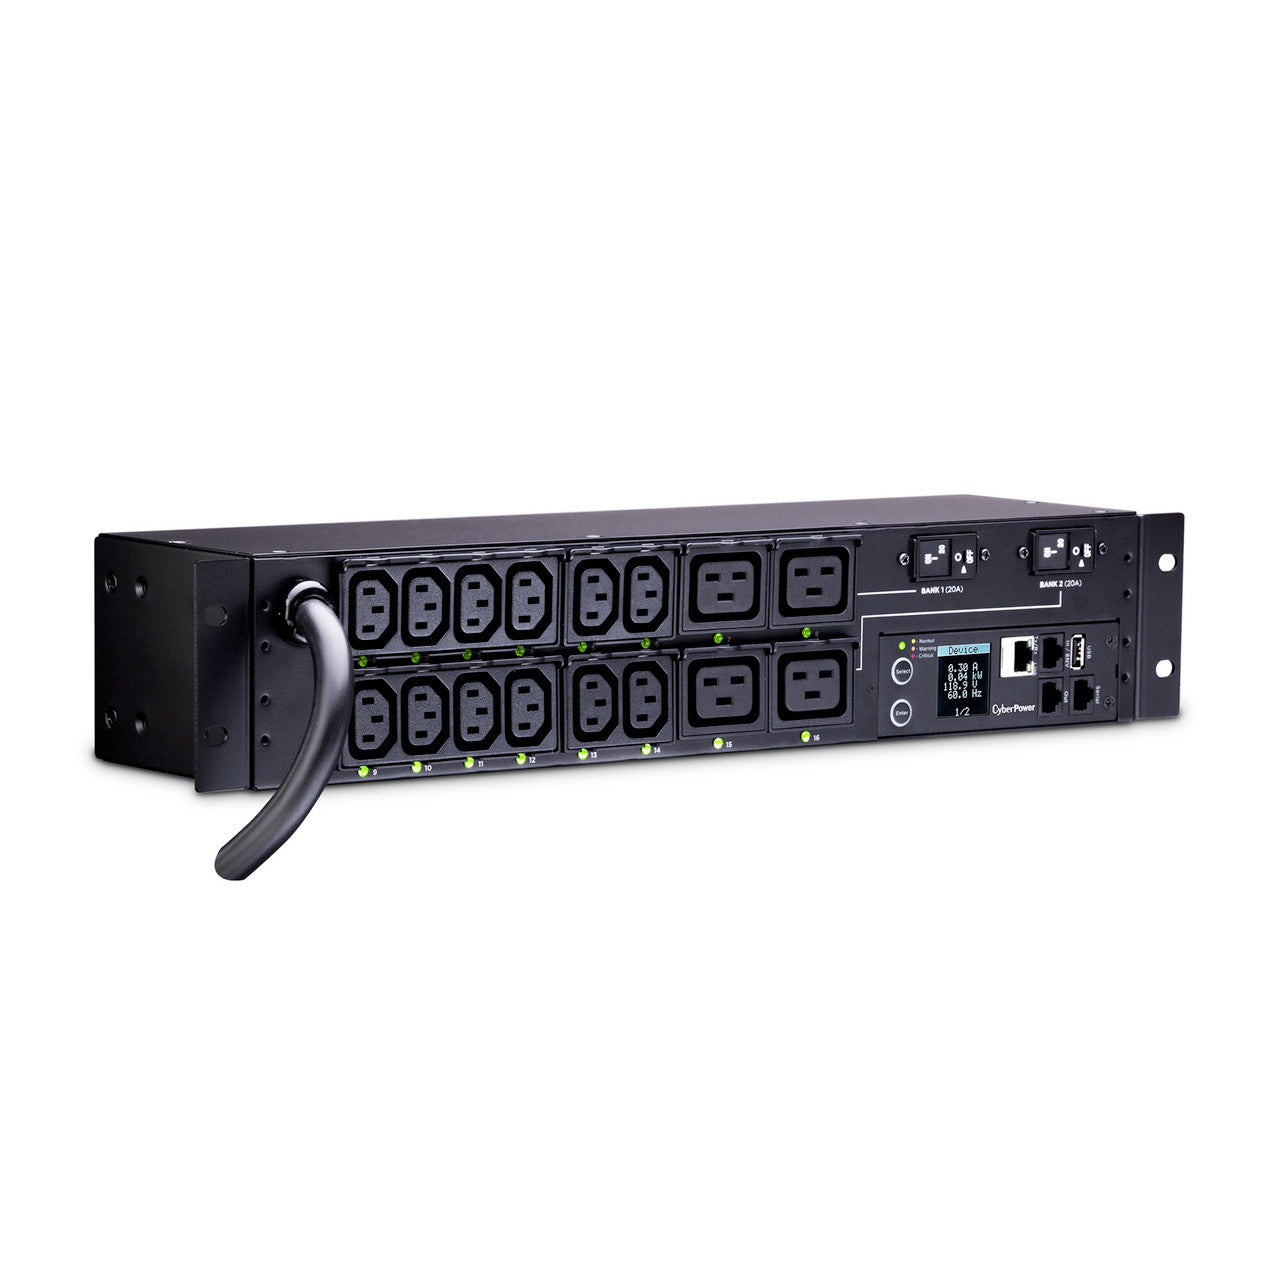 CyberPower PDU41008 Switched PDU 30A 220V (12) IEC-C13 (4) IEC-C19 Out L6-30P 12ft 2U 3YR Wty